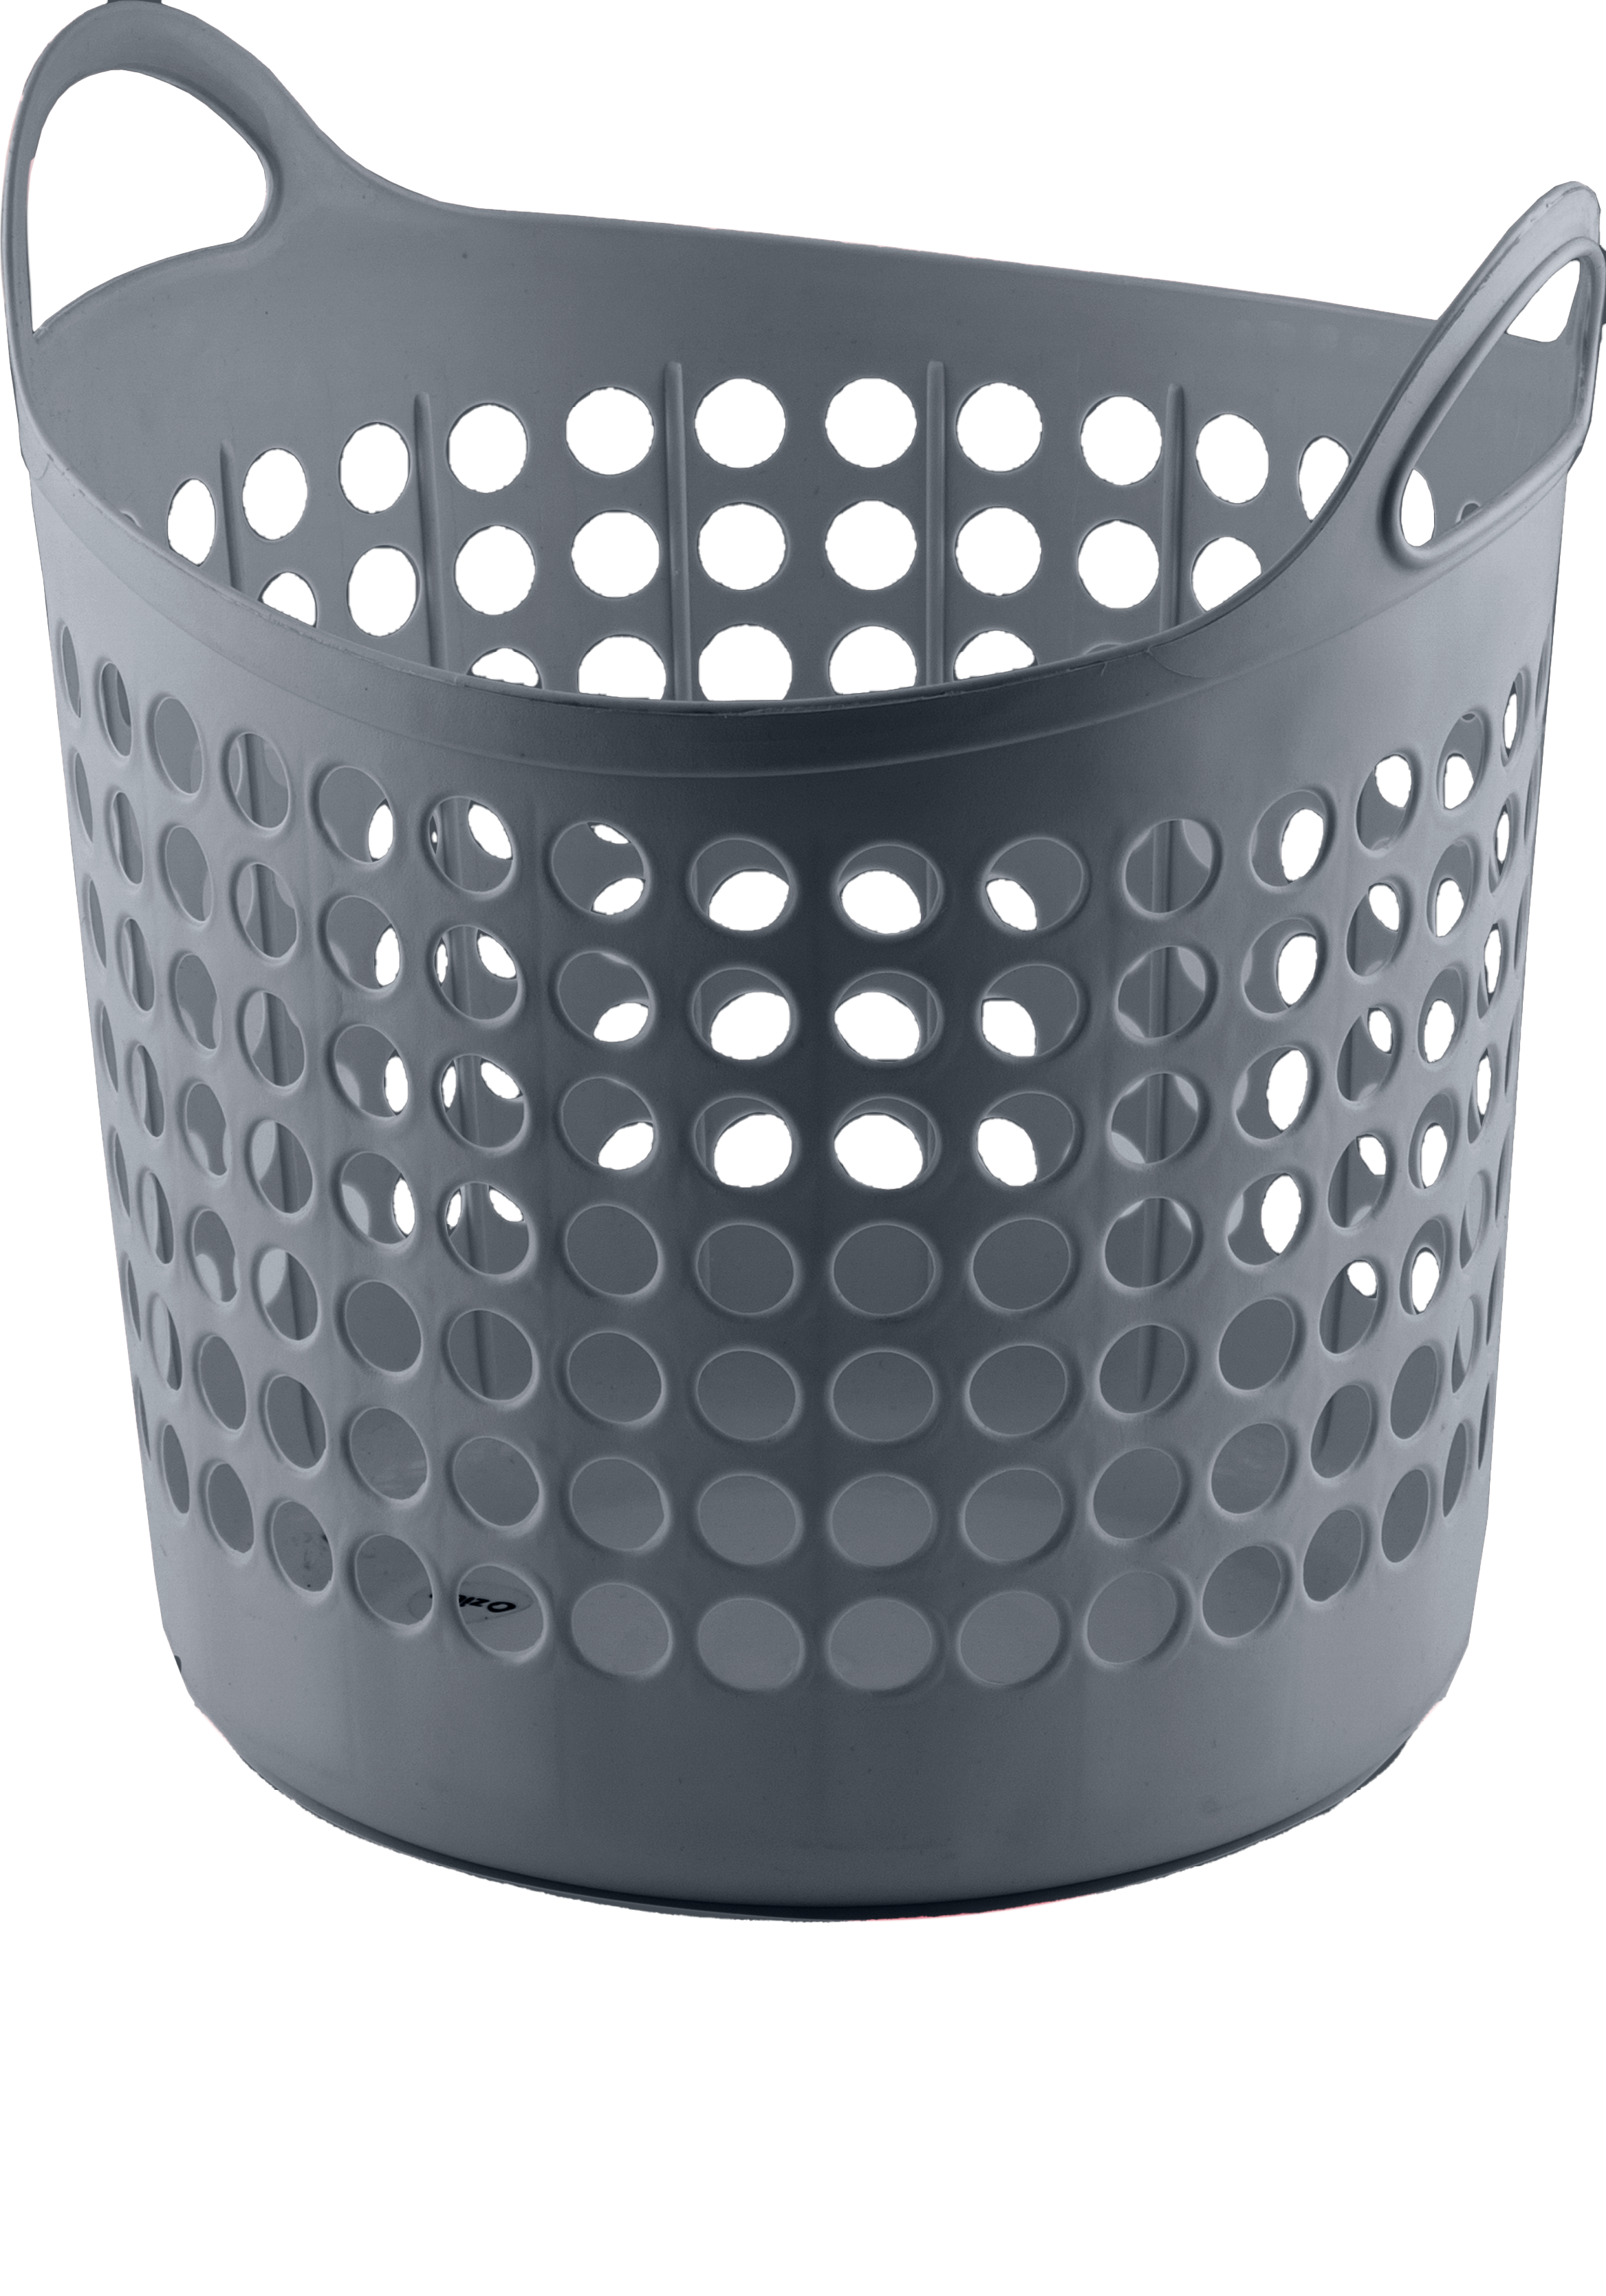 laundry Bin Basket